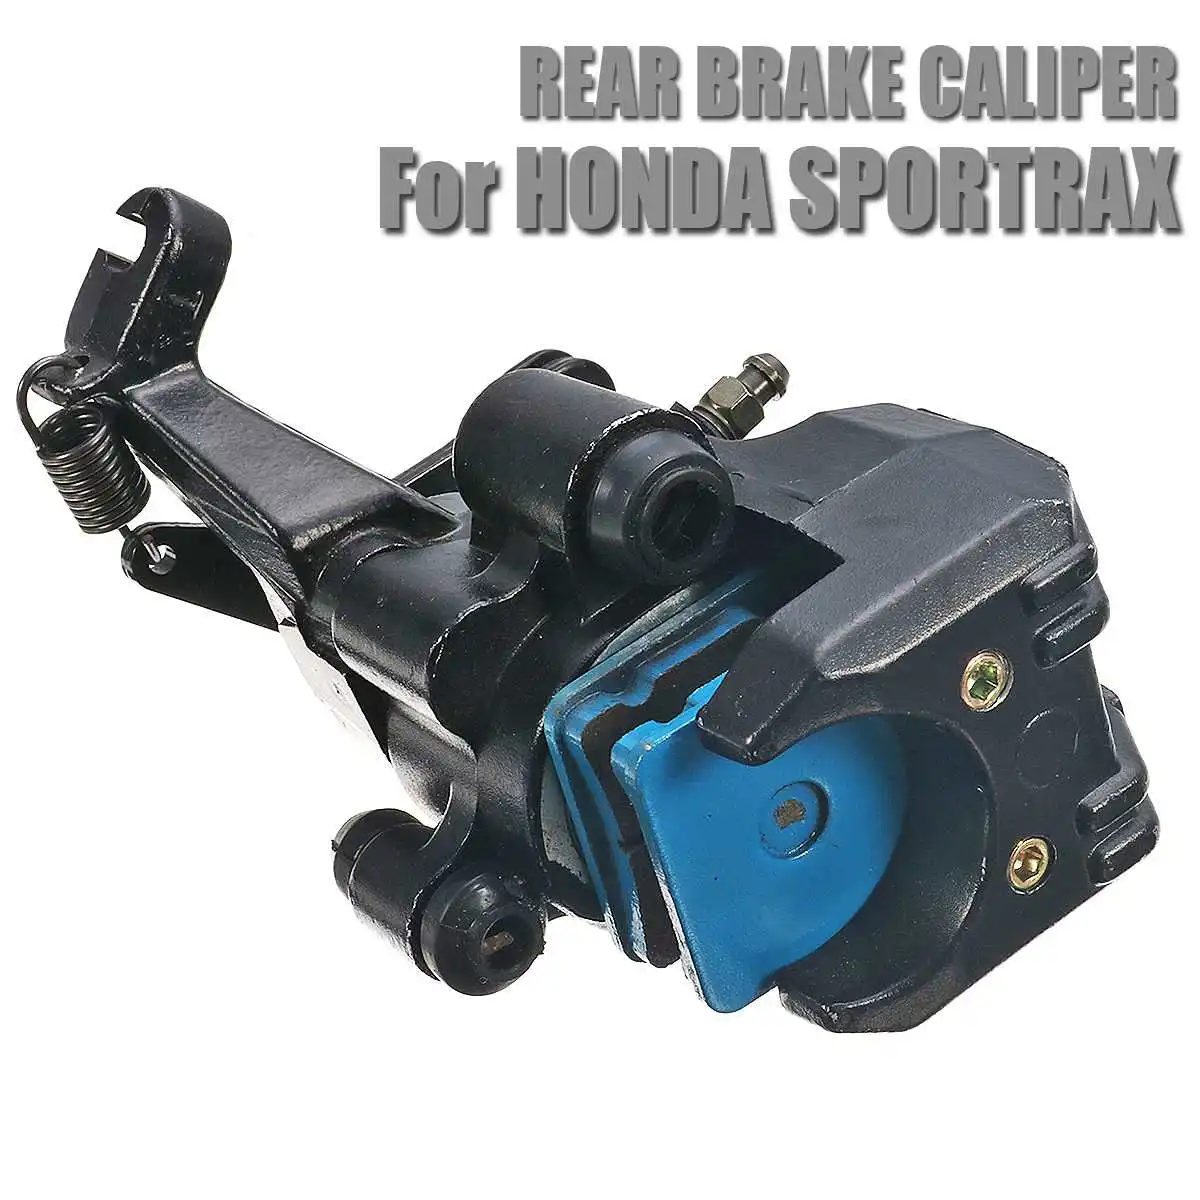 Fits Honda Sportrax 400 Trx400ex Trx 400x 05-14 Rear Brake Caliper with Pads